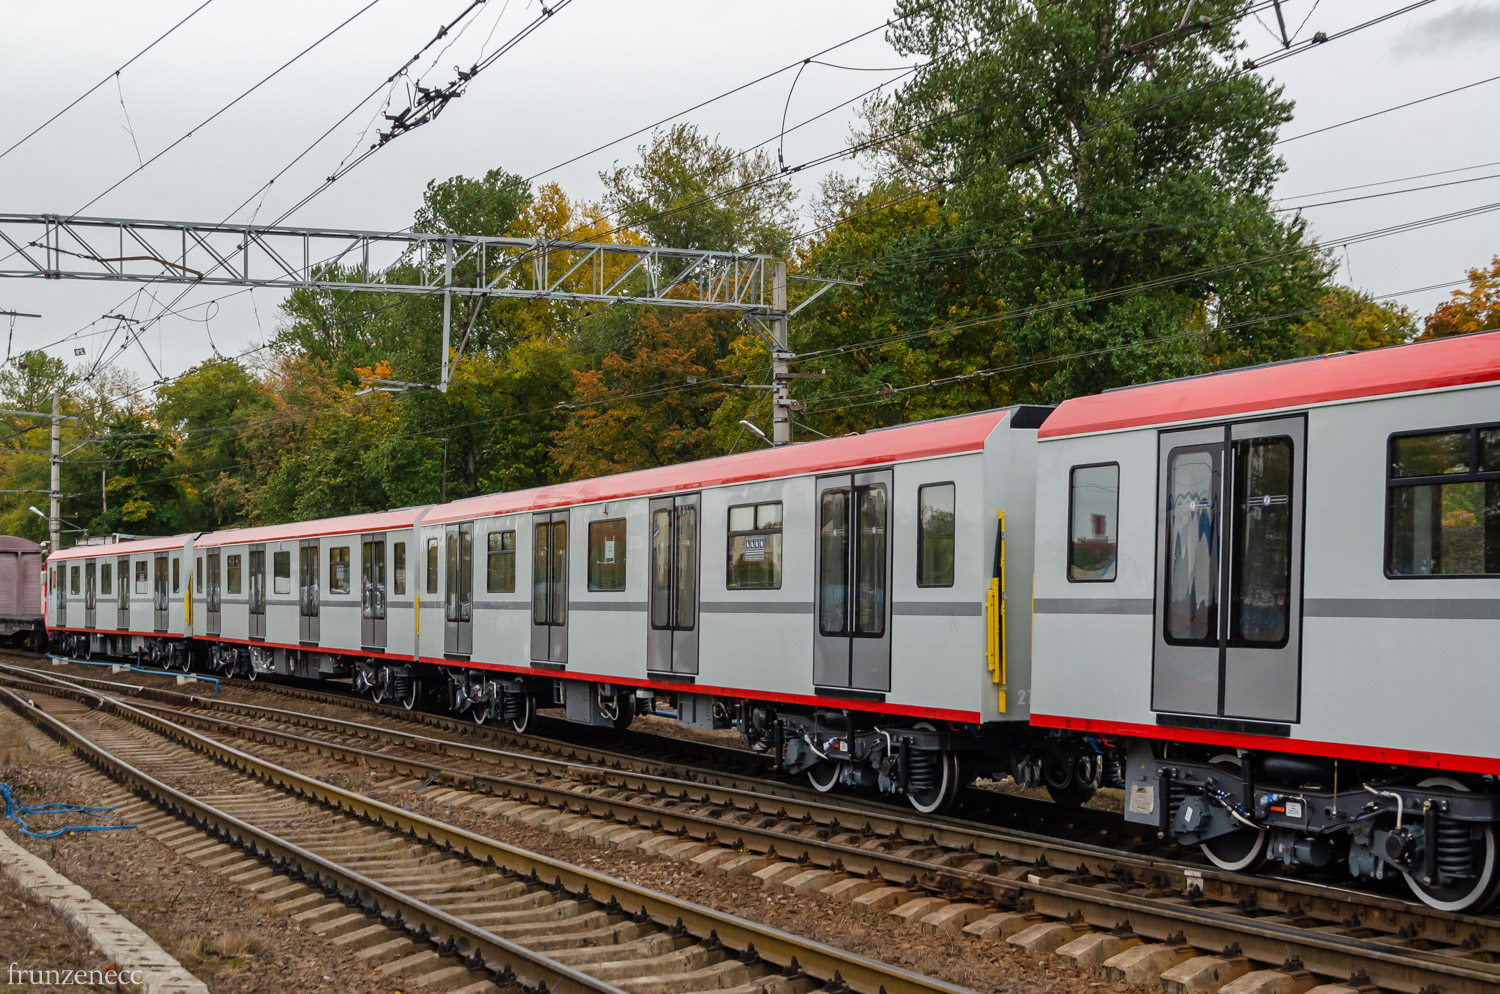 Szentpétervár, 81-727.1 "Baltiets" (MVM) — 27004; Szentpétervár — Metro — Transport of subway cars by railway